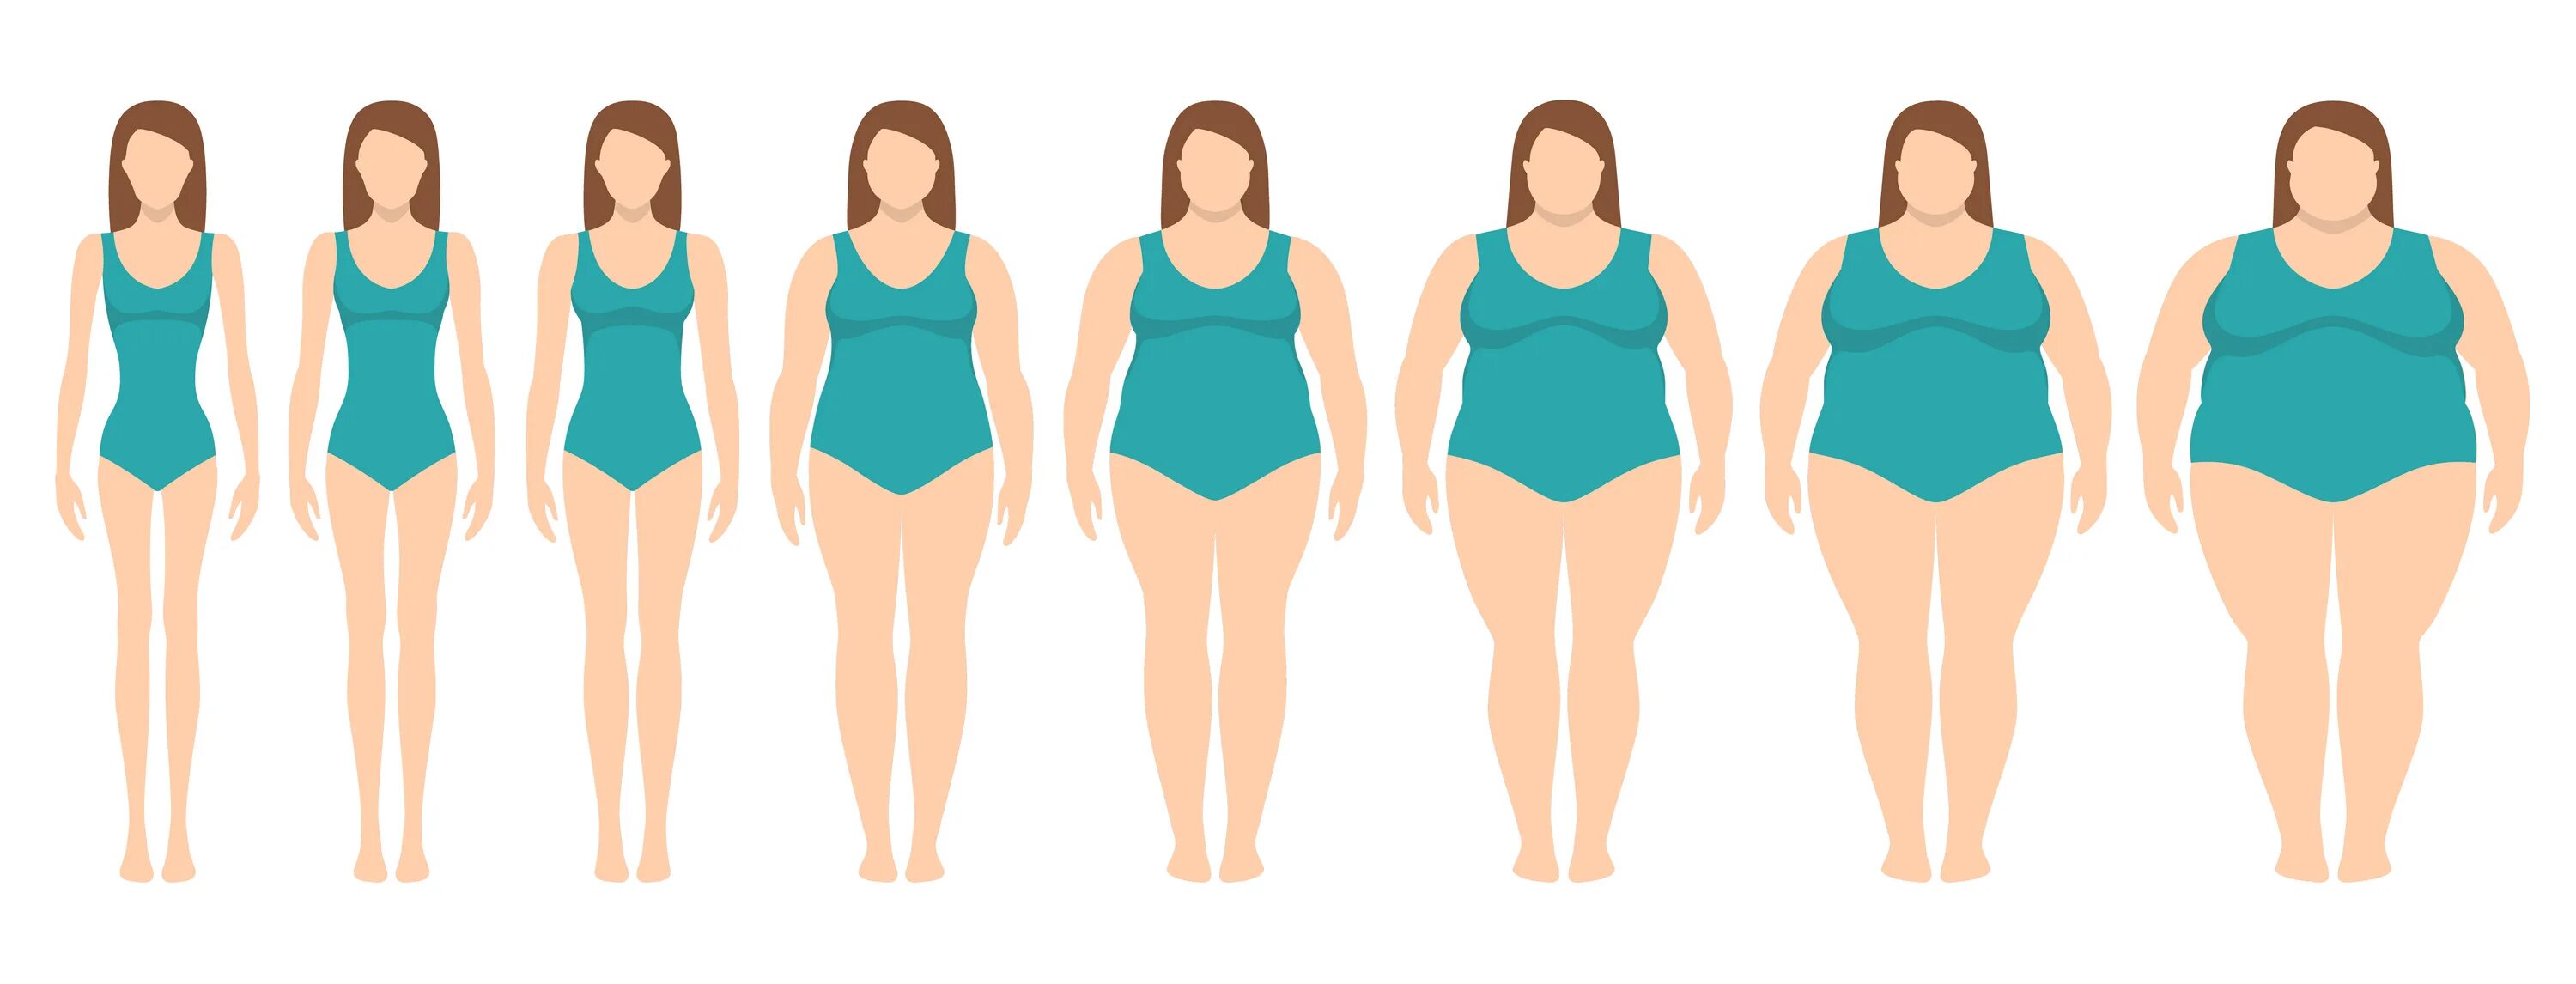 После толстого тонкий. От толстой к стройной фигуре. Женщины разной комплекции. Женщины разных фигур и телосложений. Типы женского телосложения от худых до толстых.